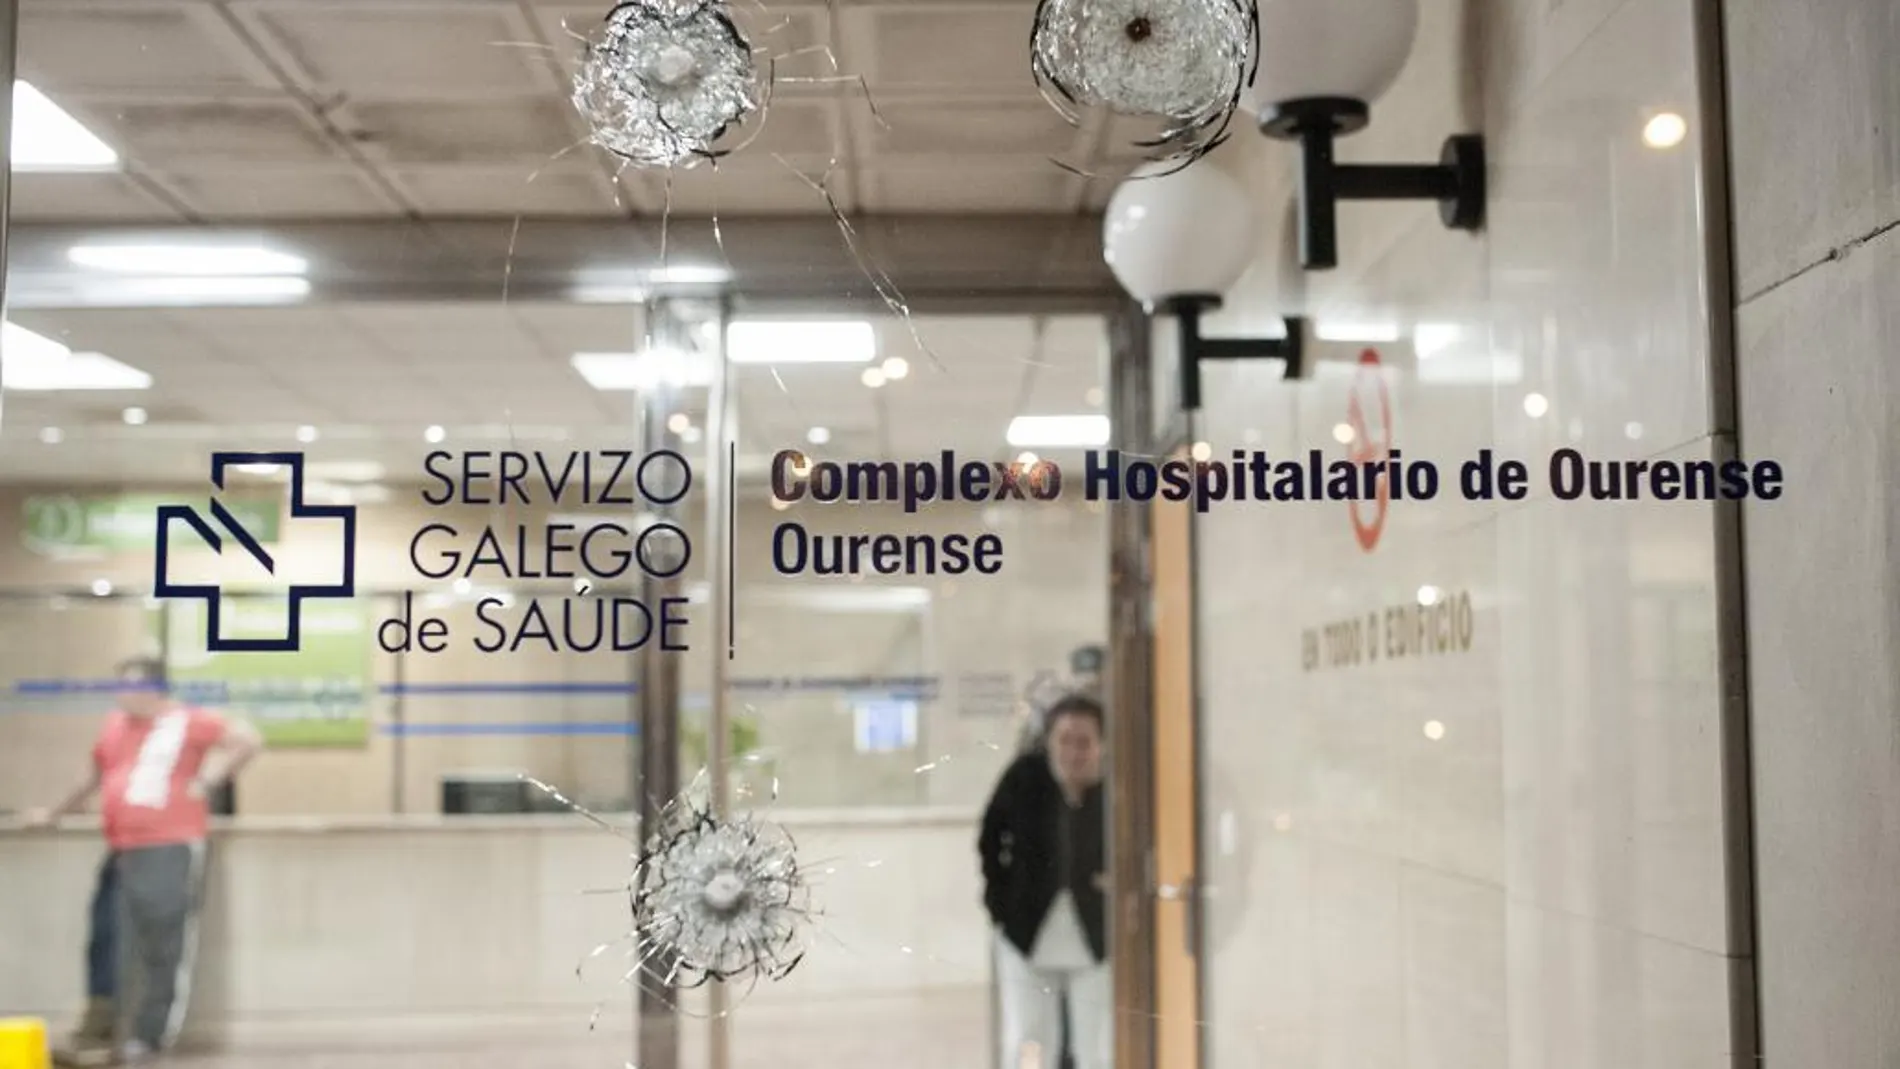 Puerta de entrada del Hospital Universitario de Ourense, donde se observan los impactos de bala.